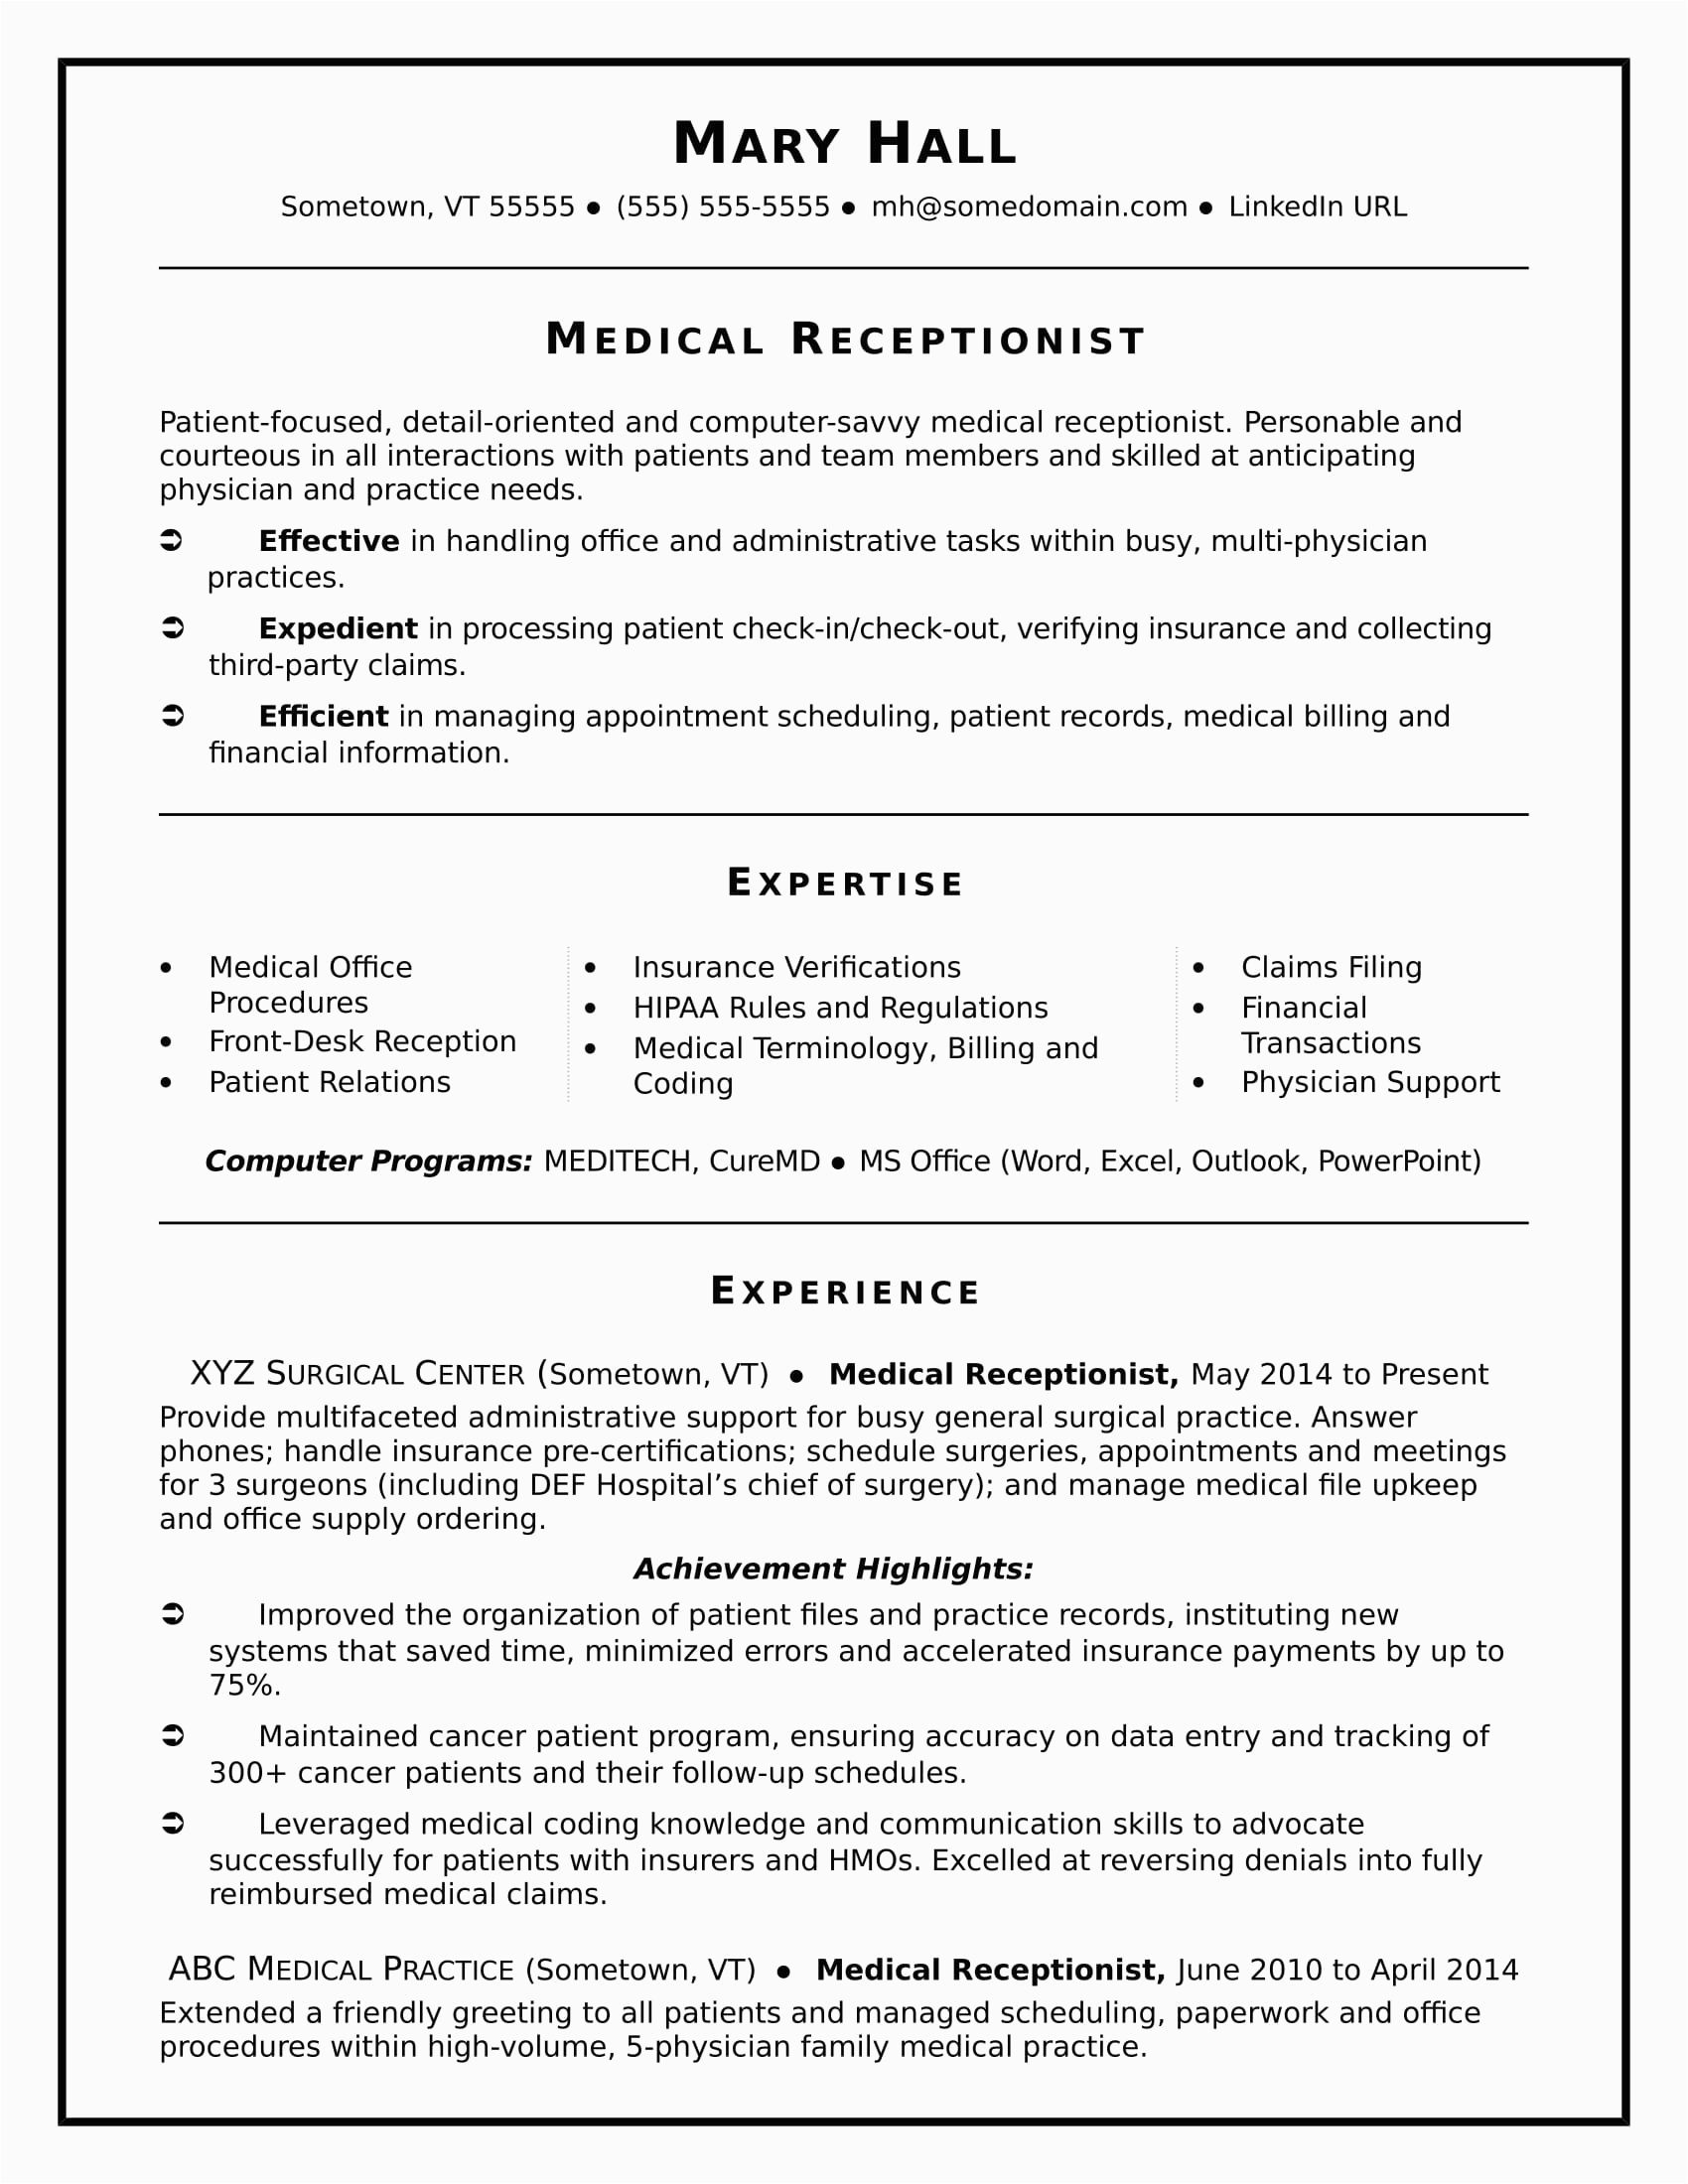 Sample Resume for Medical assistant Receptionist Medical Receptionist Resume Sample